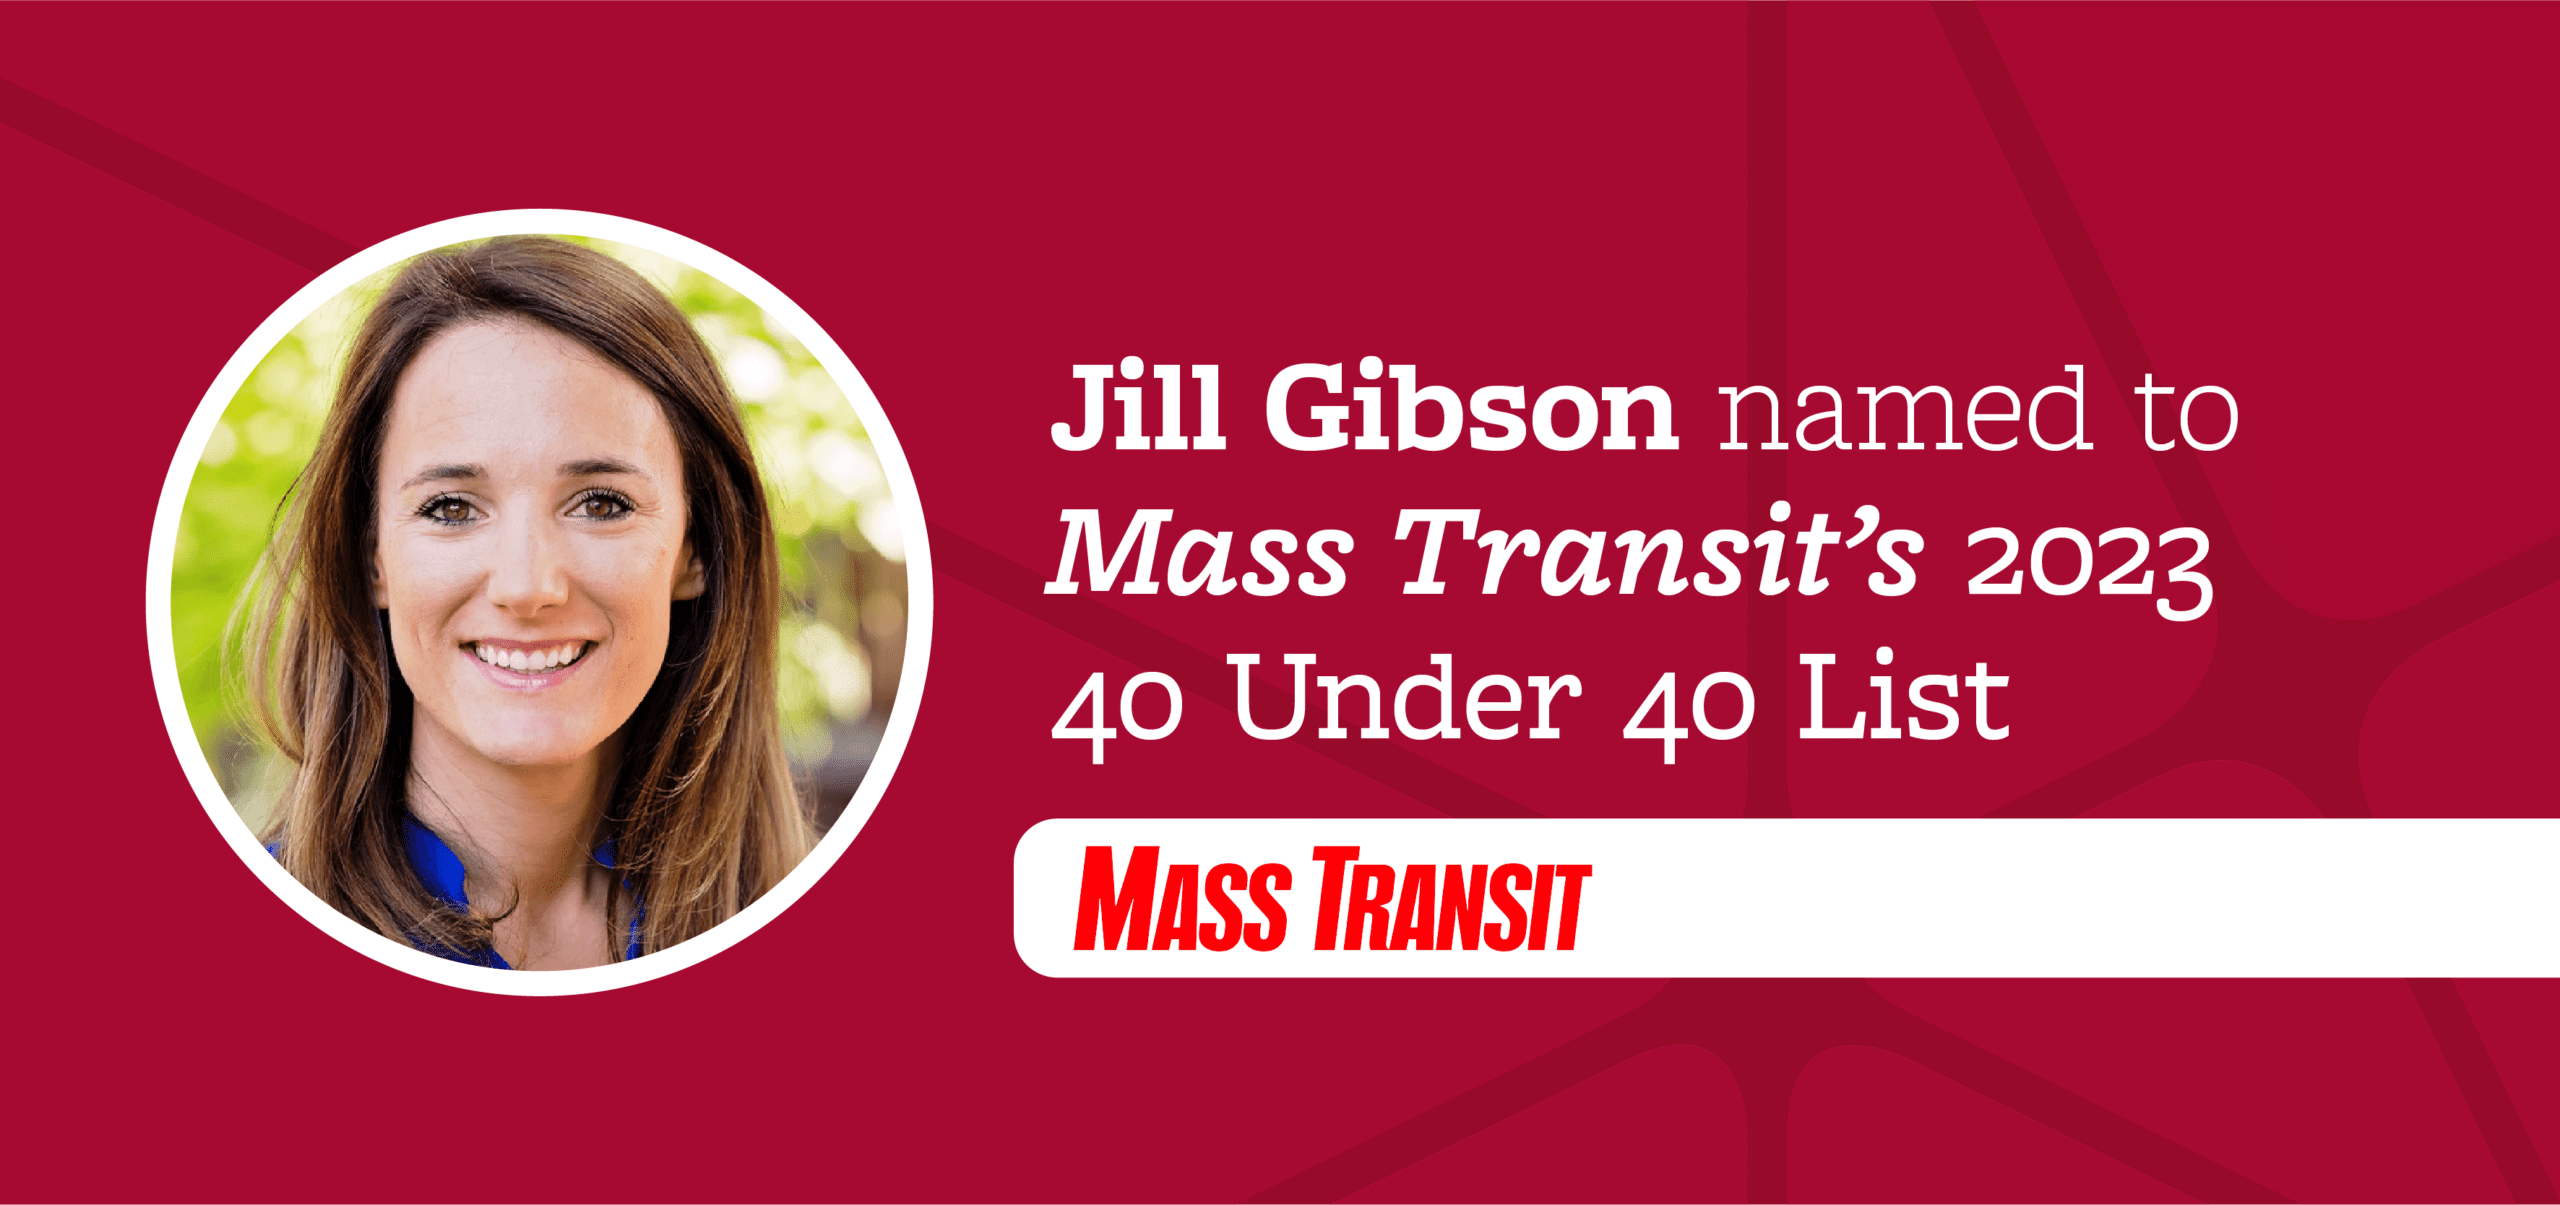 Jill Gibson 40 under 40